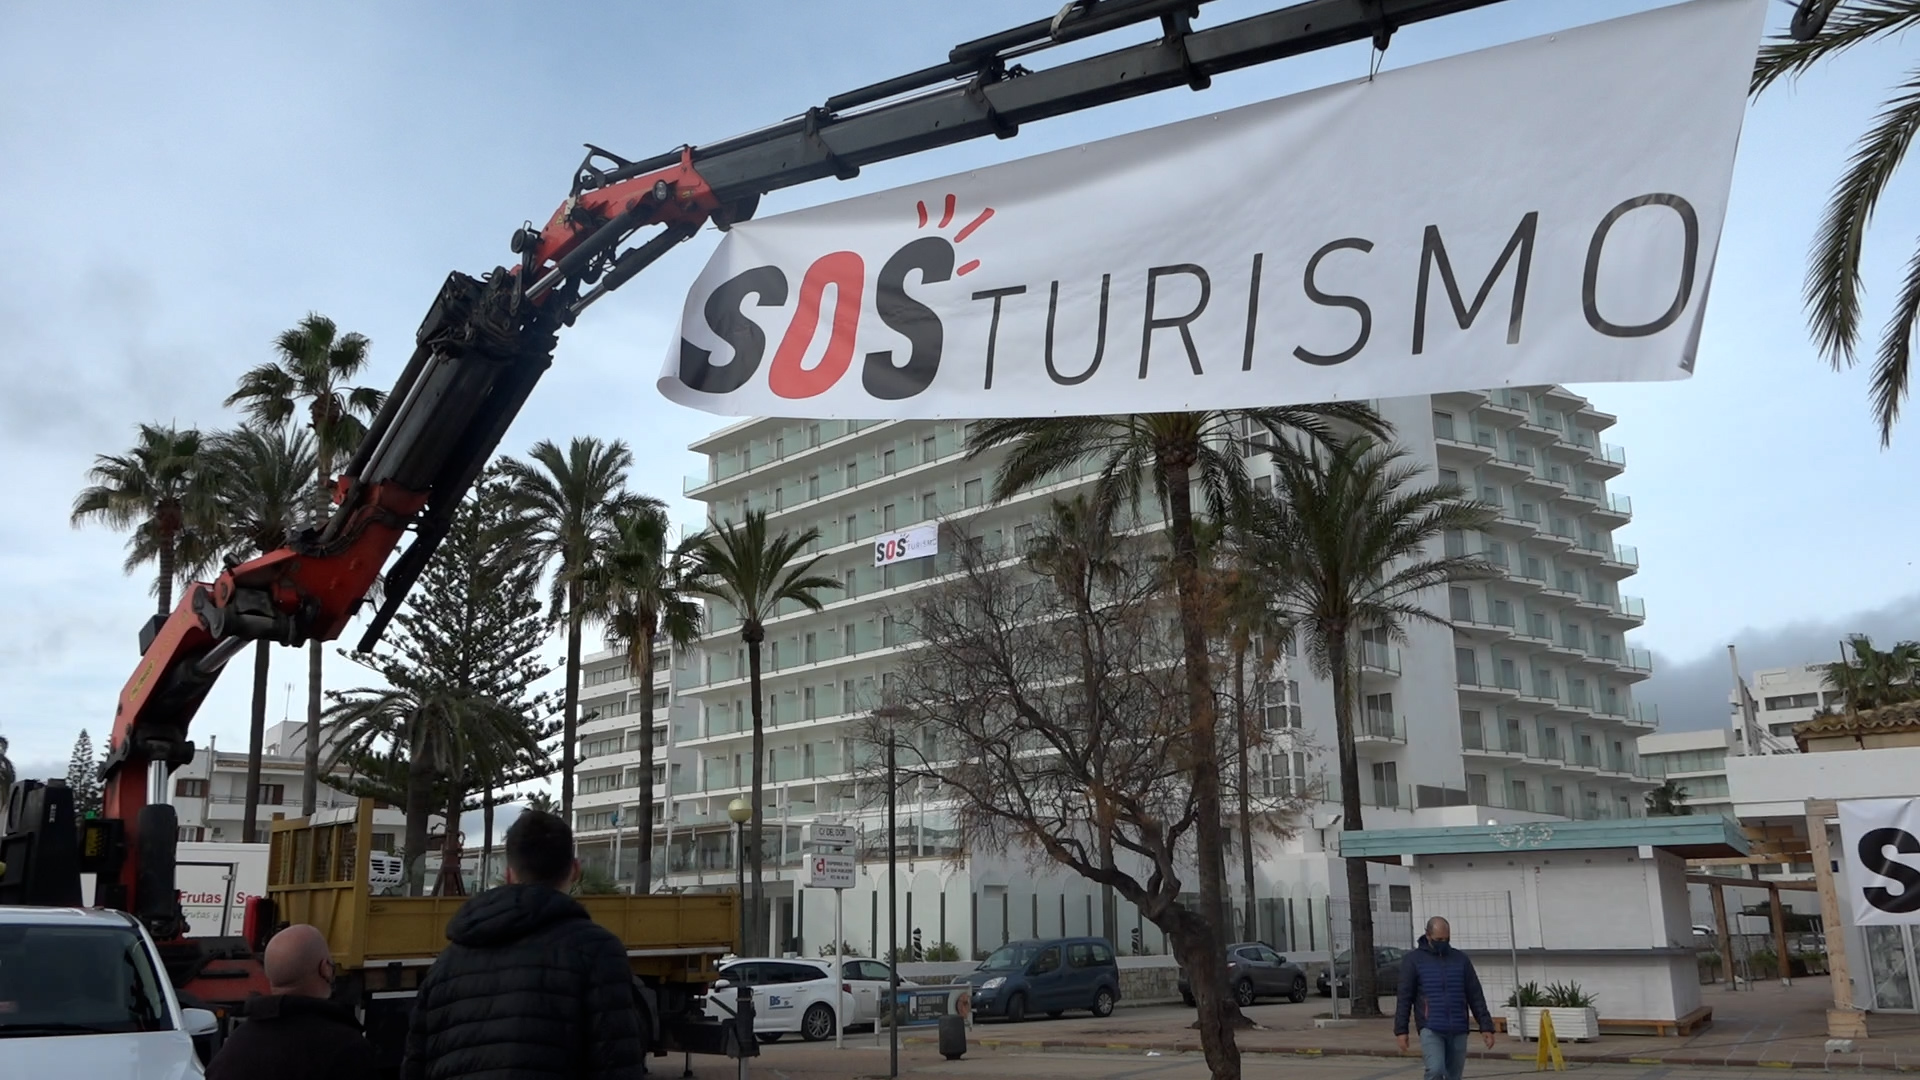  Recolzament a la Campanya SOS turisme